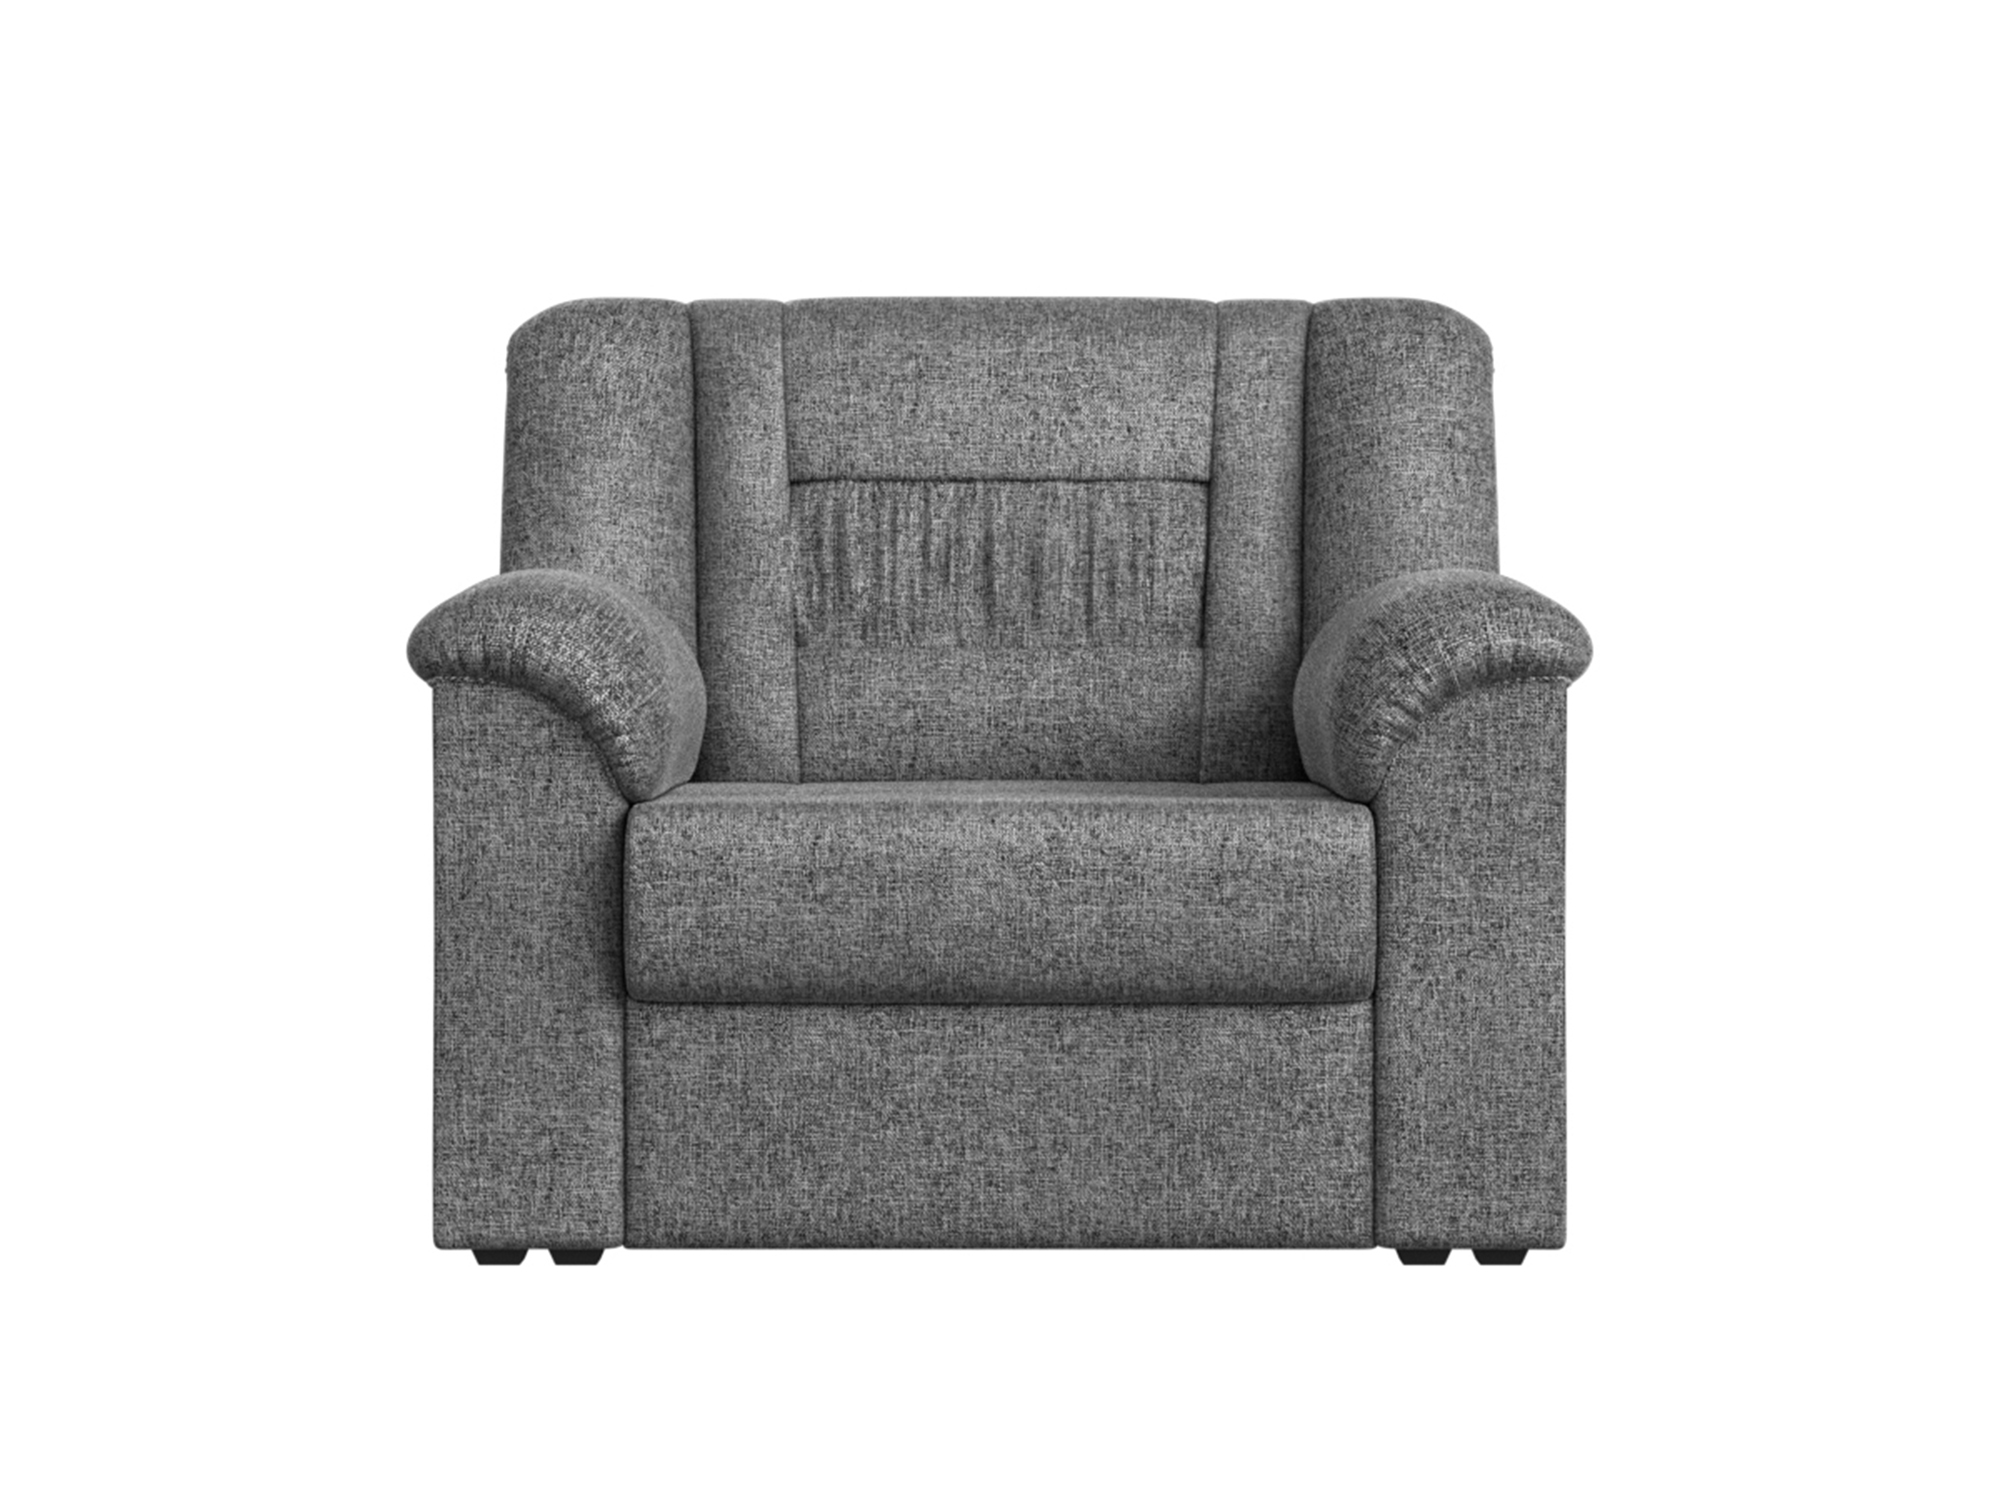 кресло прямое модульное комфорт люкс цвет серый рогожка Кресло Карелия MebelVia Серый, Рогожка, ЛДСП